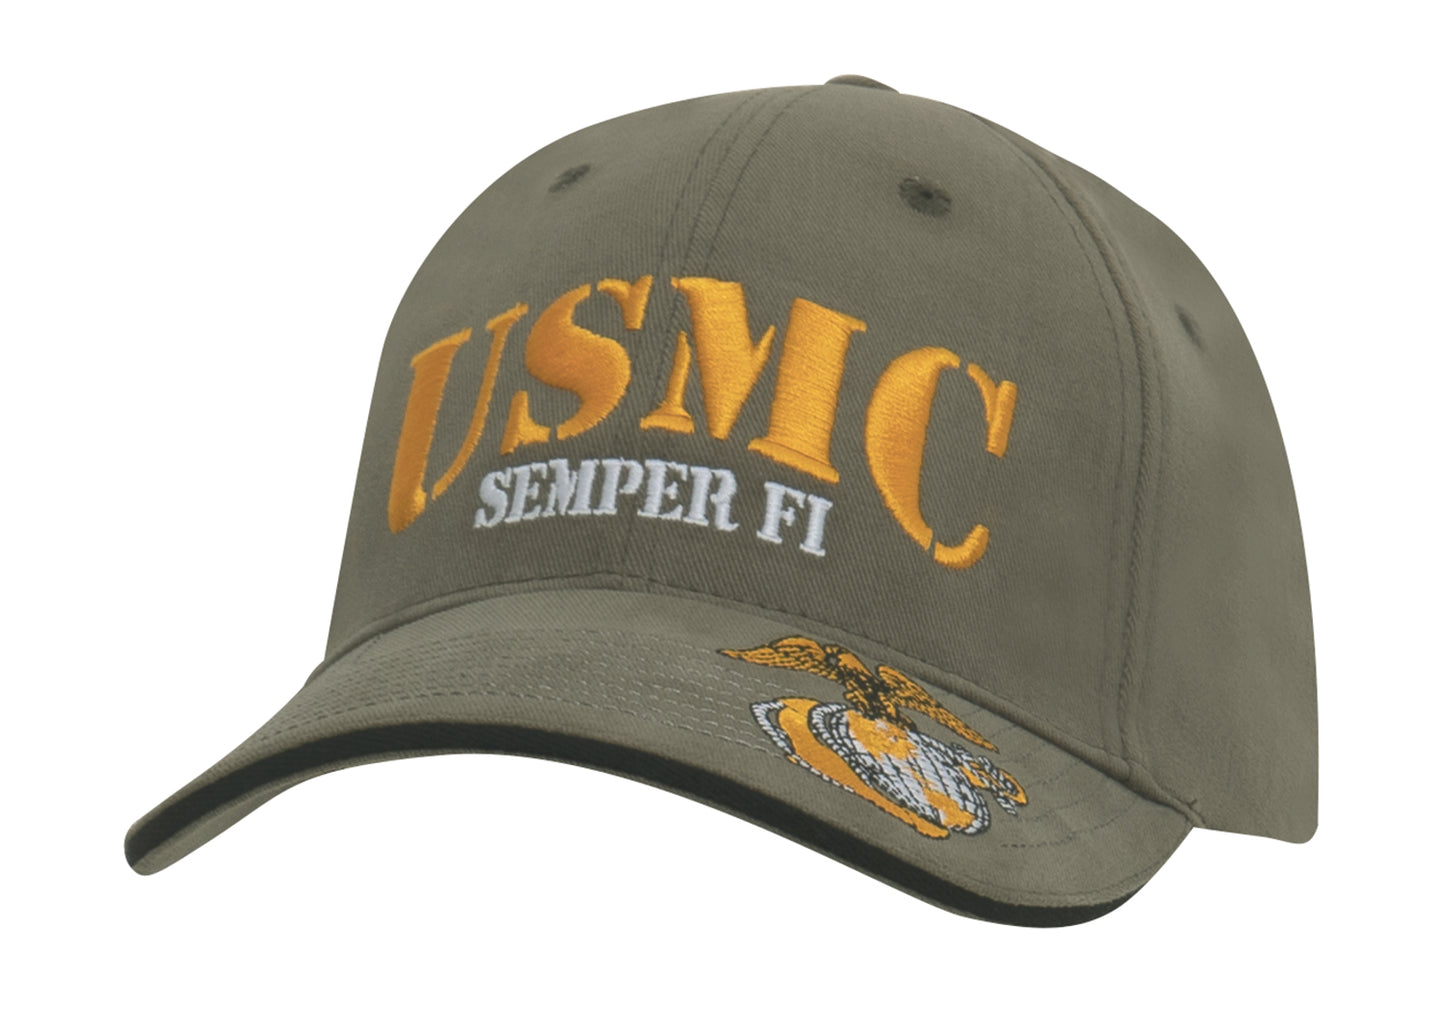 Cap, USMC Semper Fi Low Profile